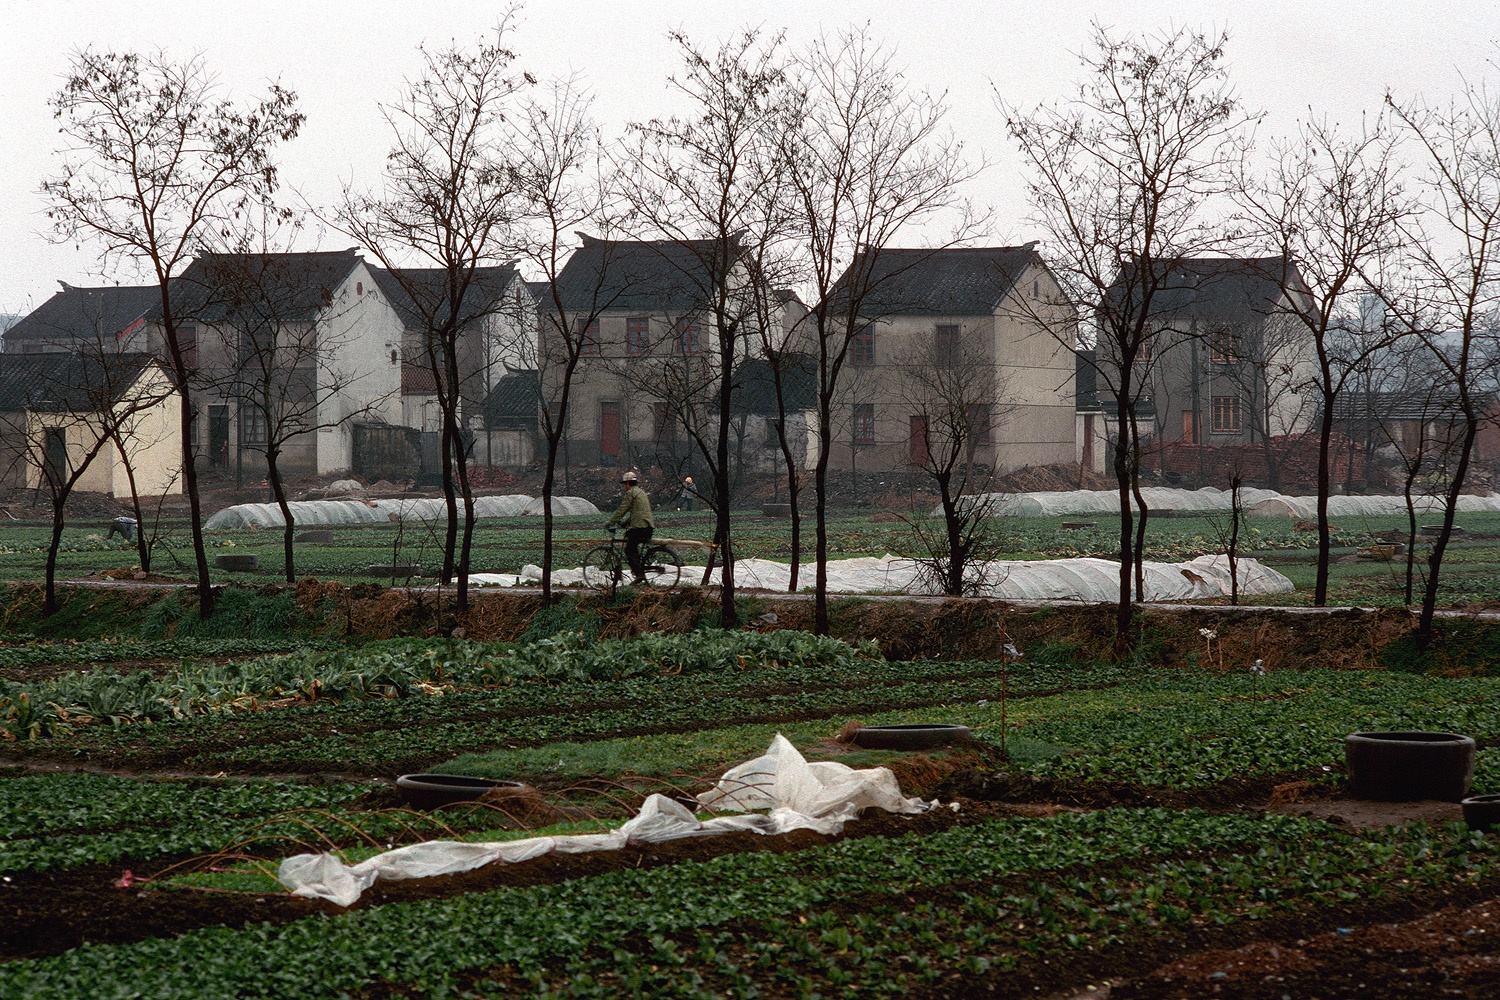 bill-hocker-new-farm-houses-near-suzhou-china-1988